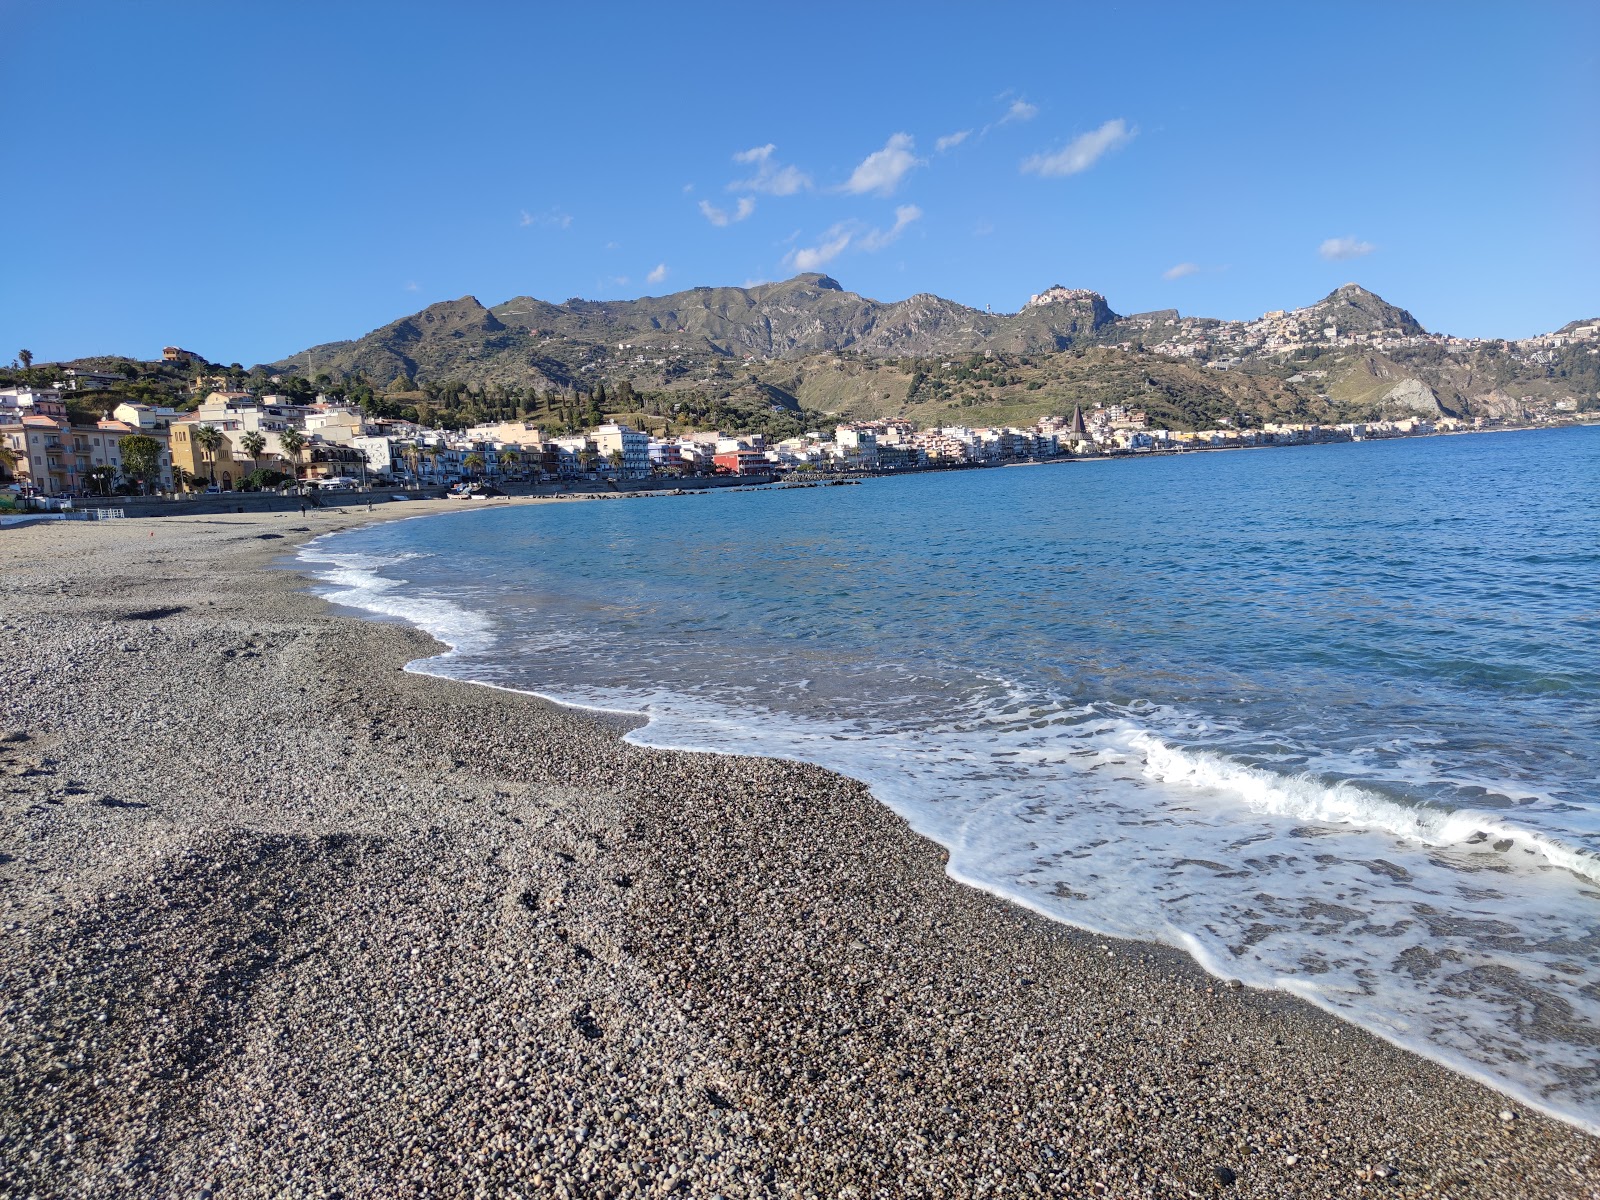 Giardini Naxos III'in fotoğrafı plaj tatil beldesi alanı